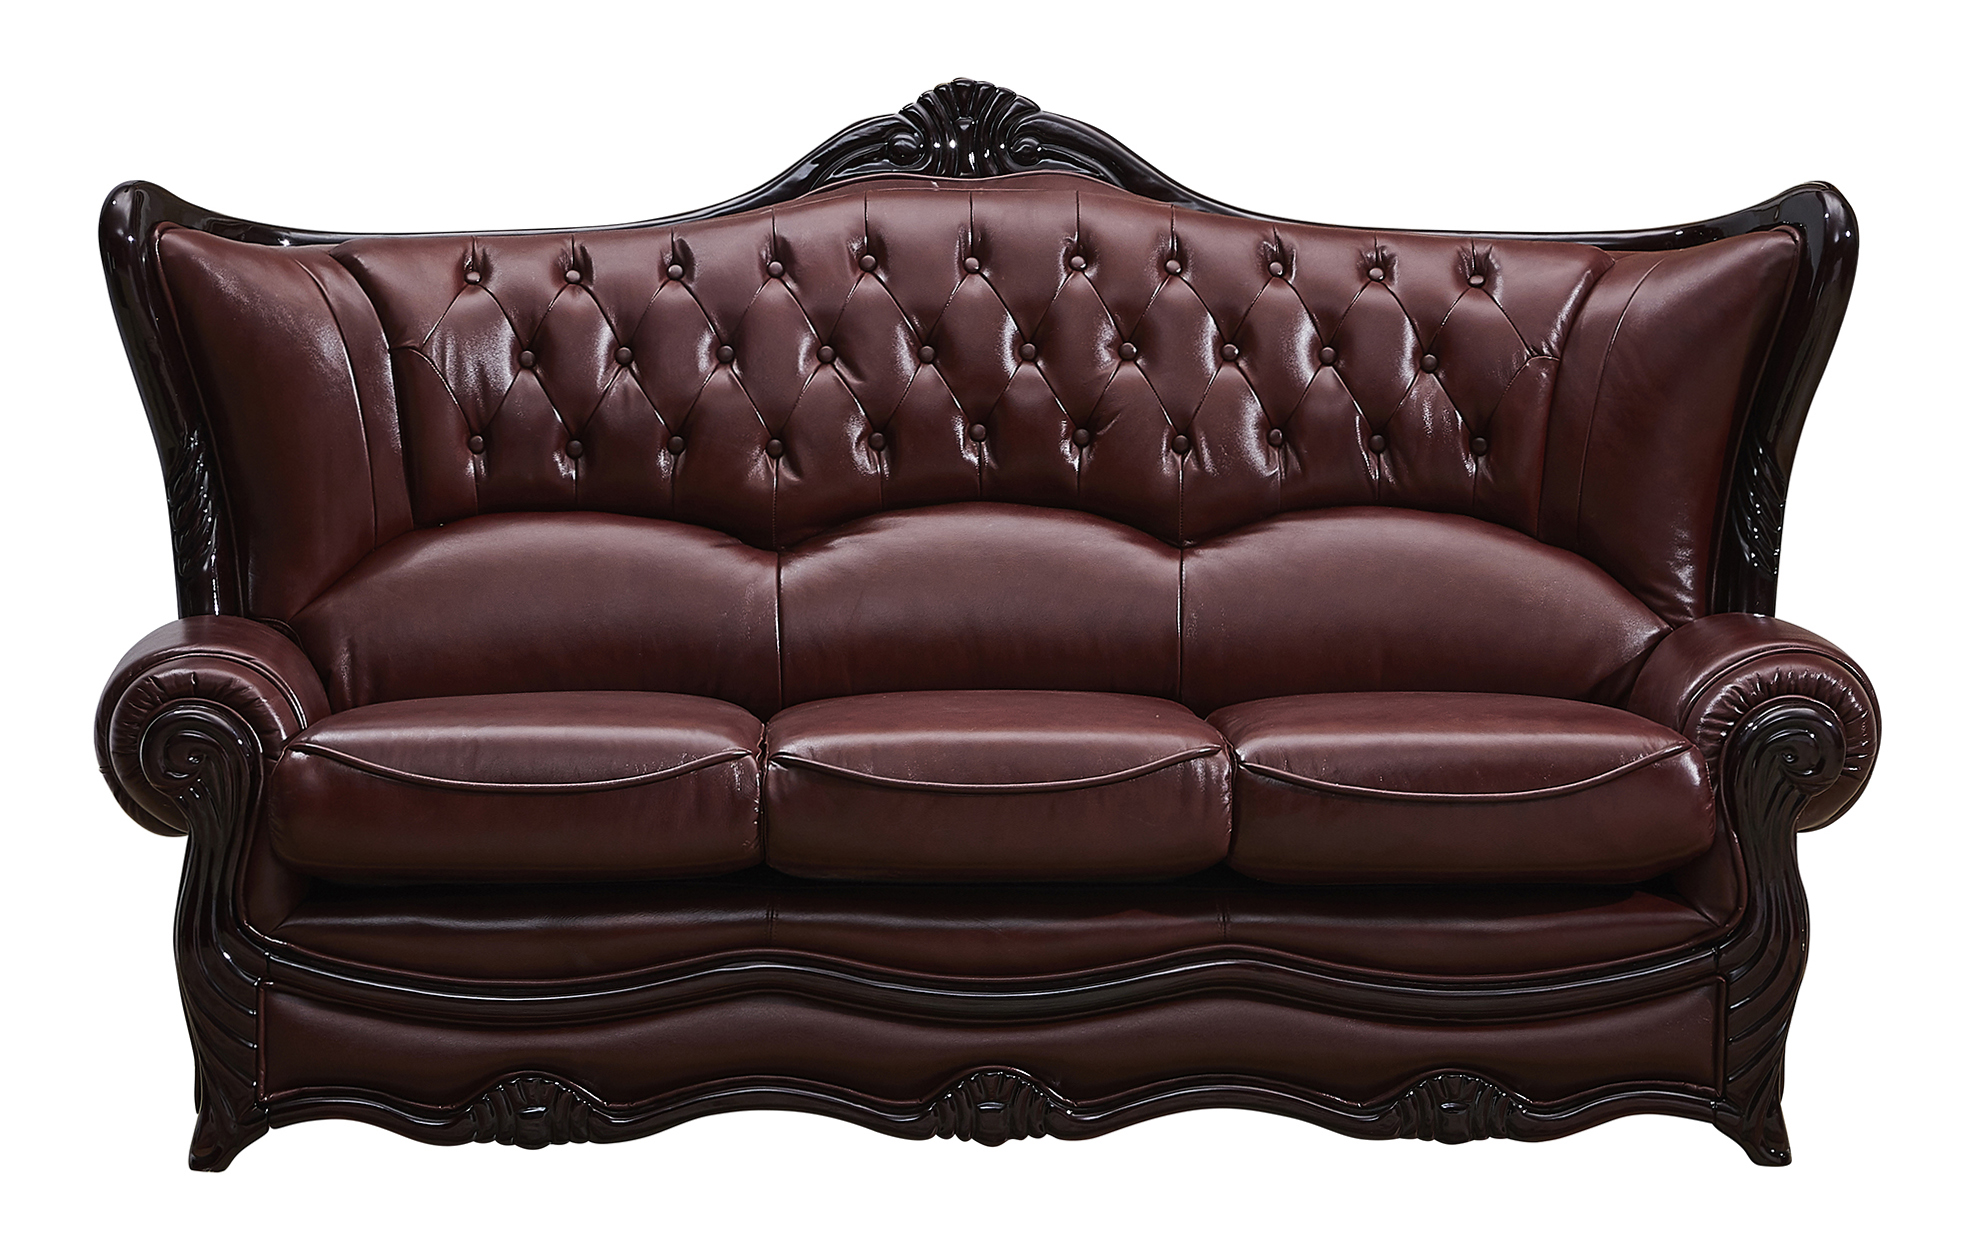 room decor ideas with burgundy leather sofa